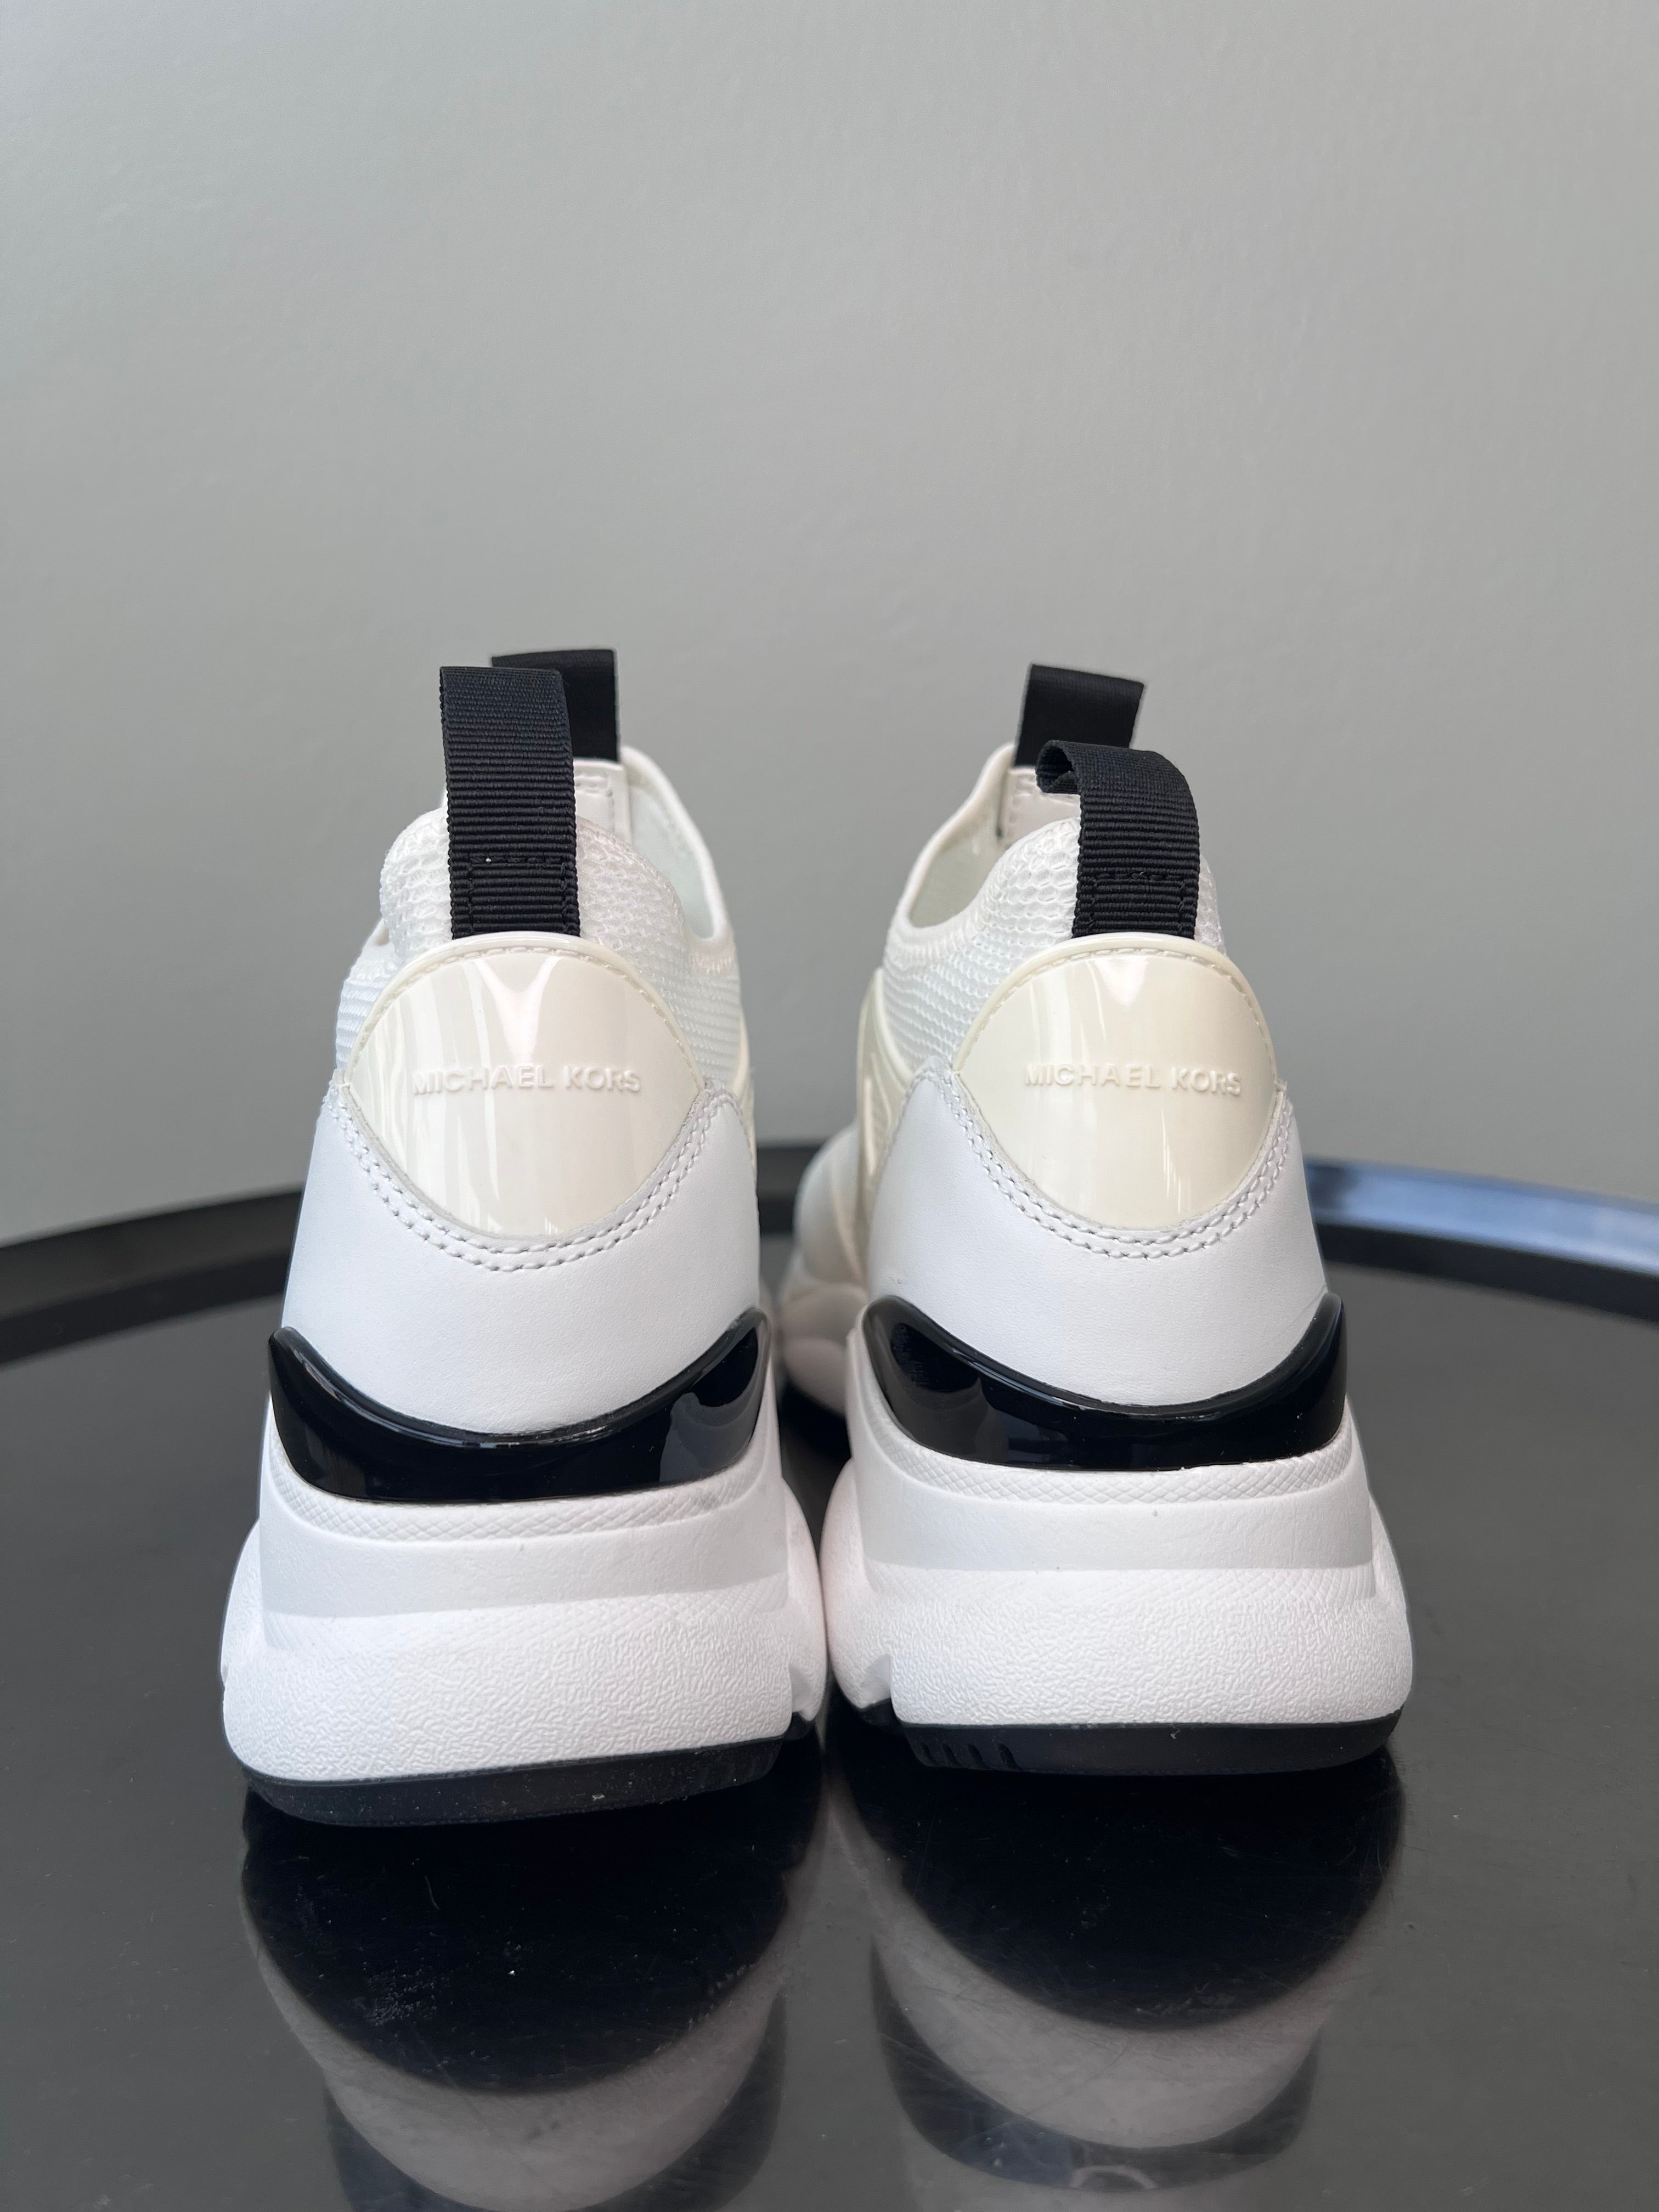 White & black sock-like sneaker - MICHAEL KORS